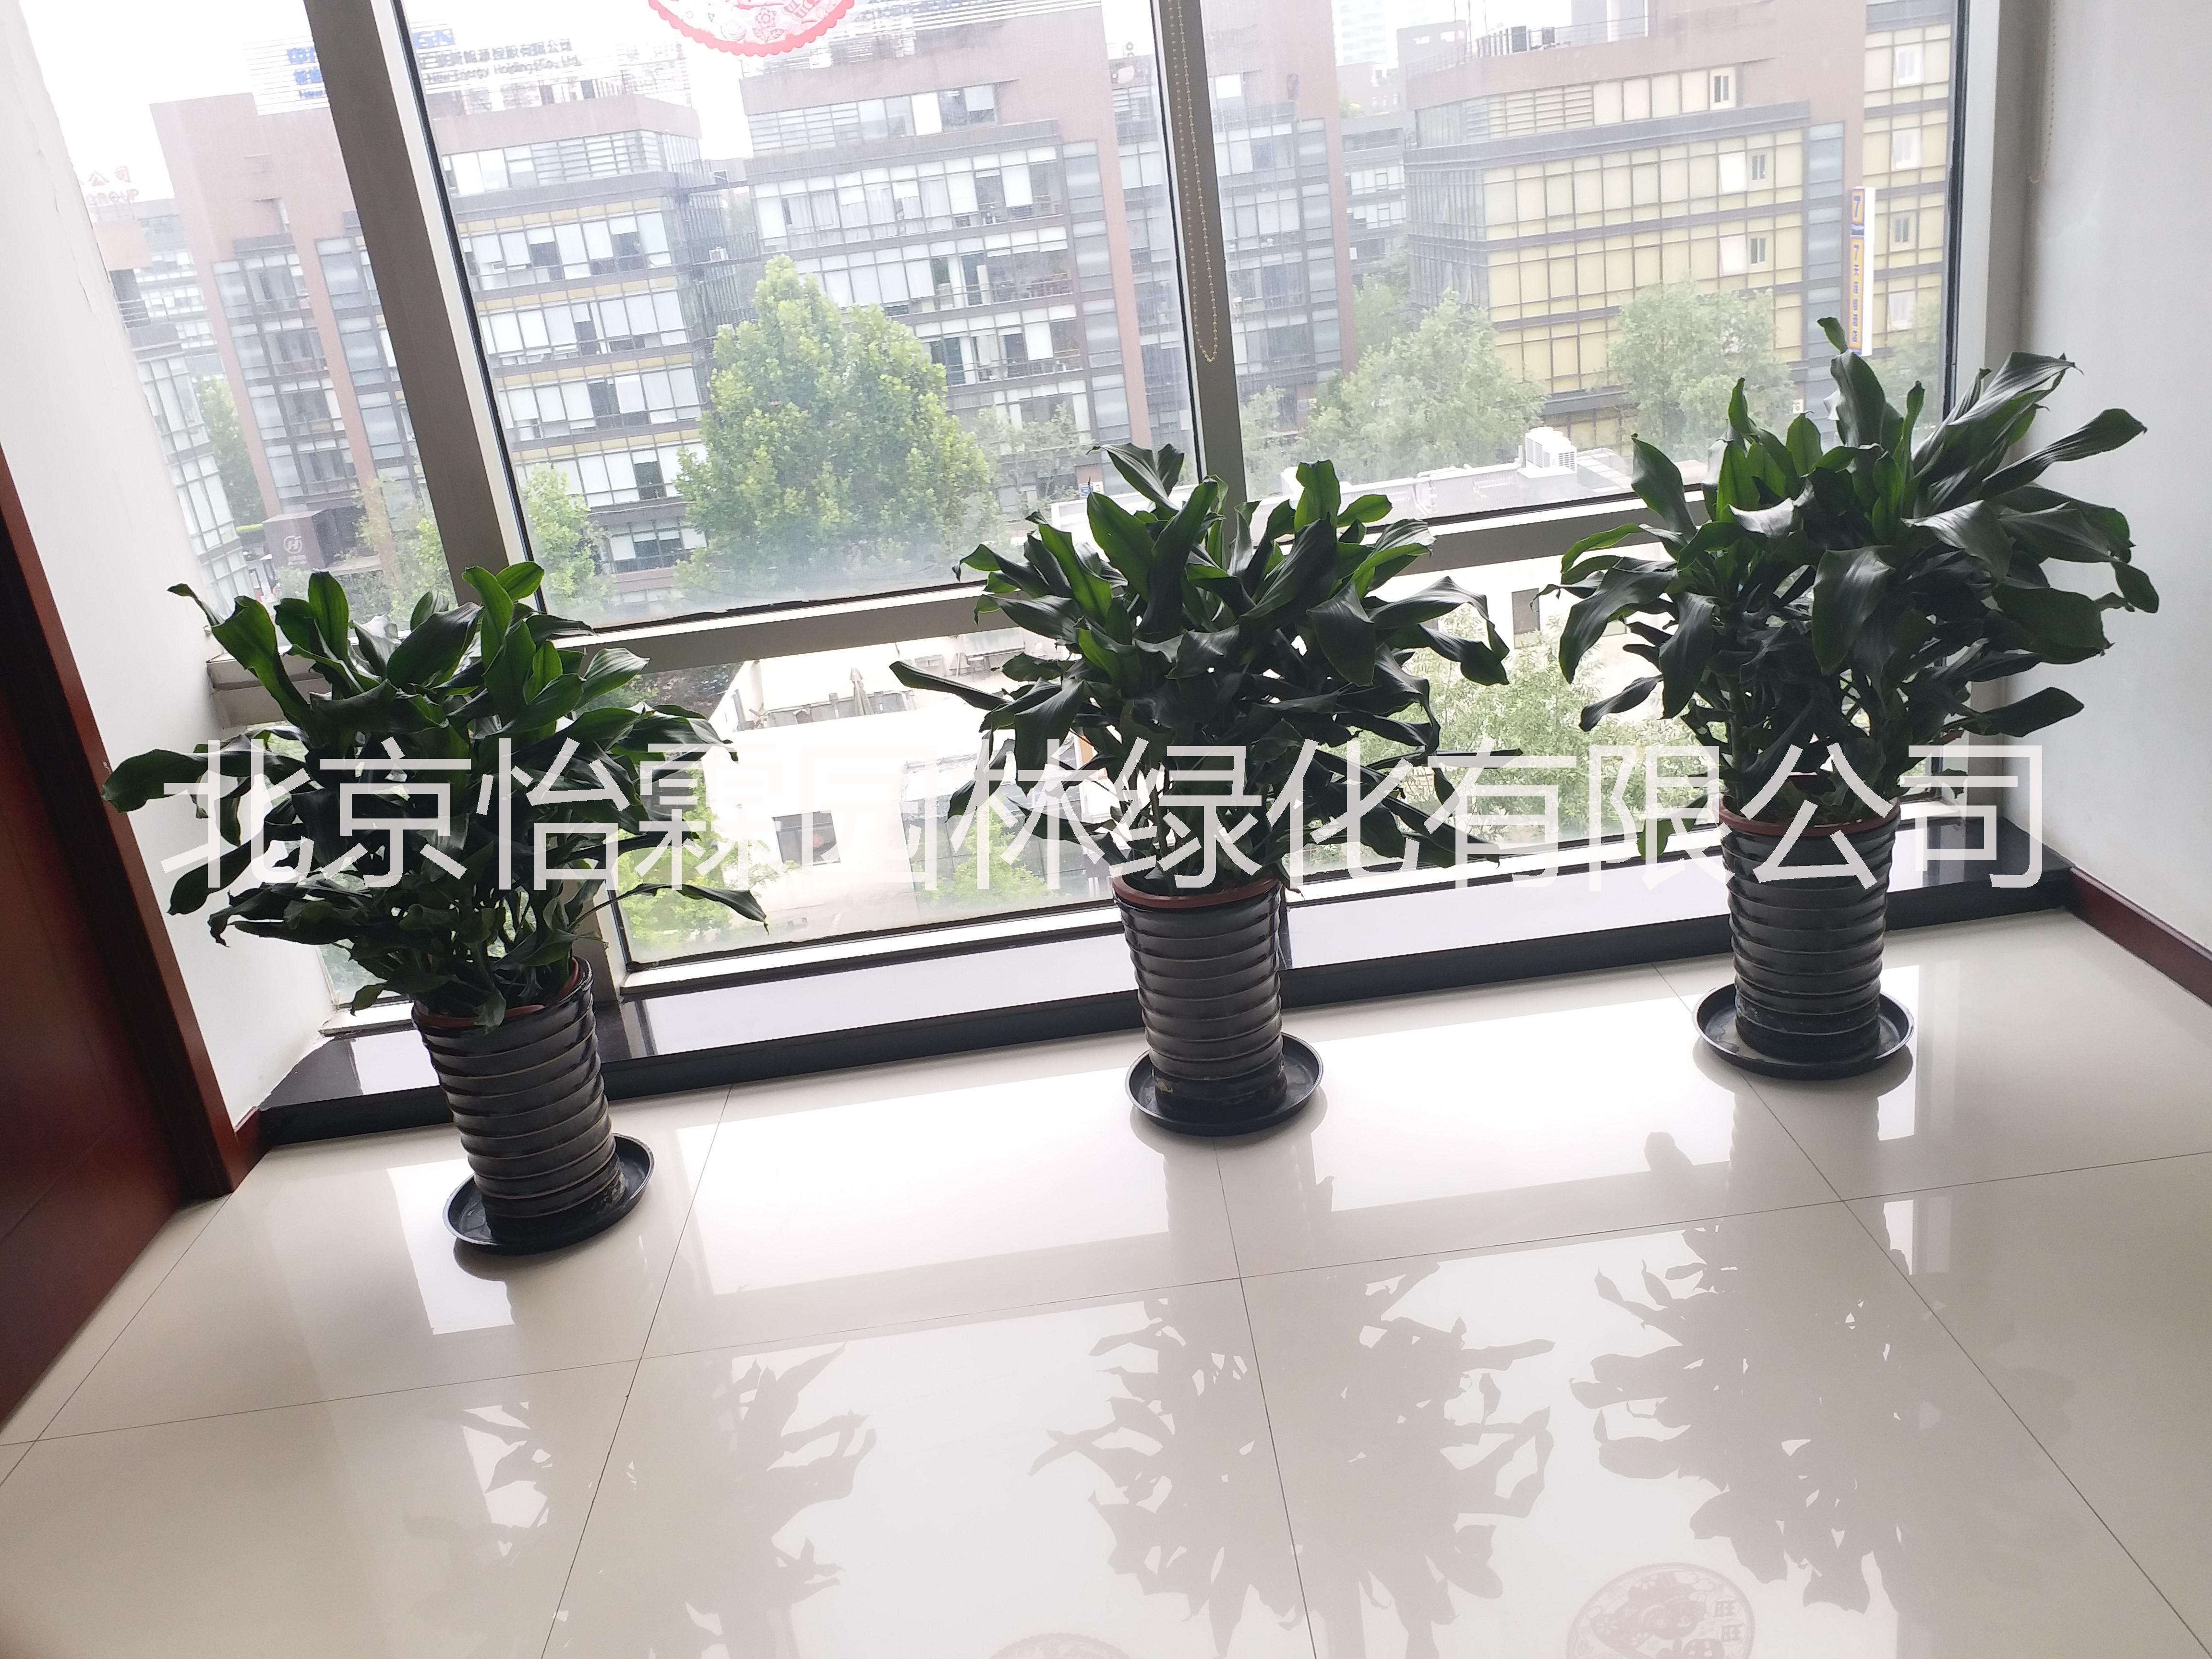 北京绿植租赁 北京绿植租赁公司 北京绿植花卉租赁公司